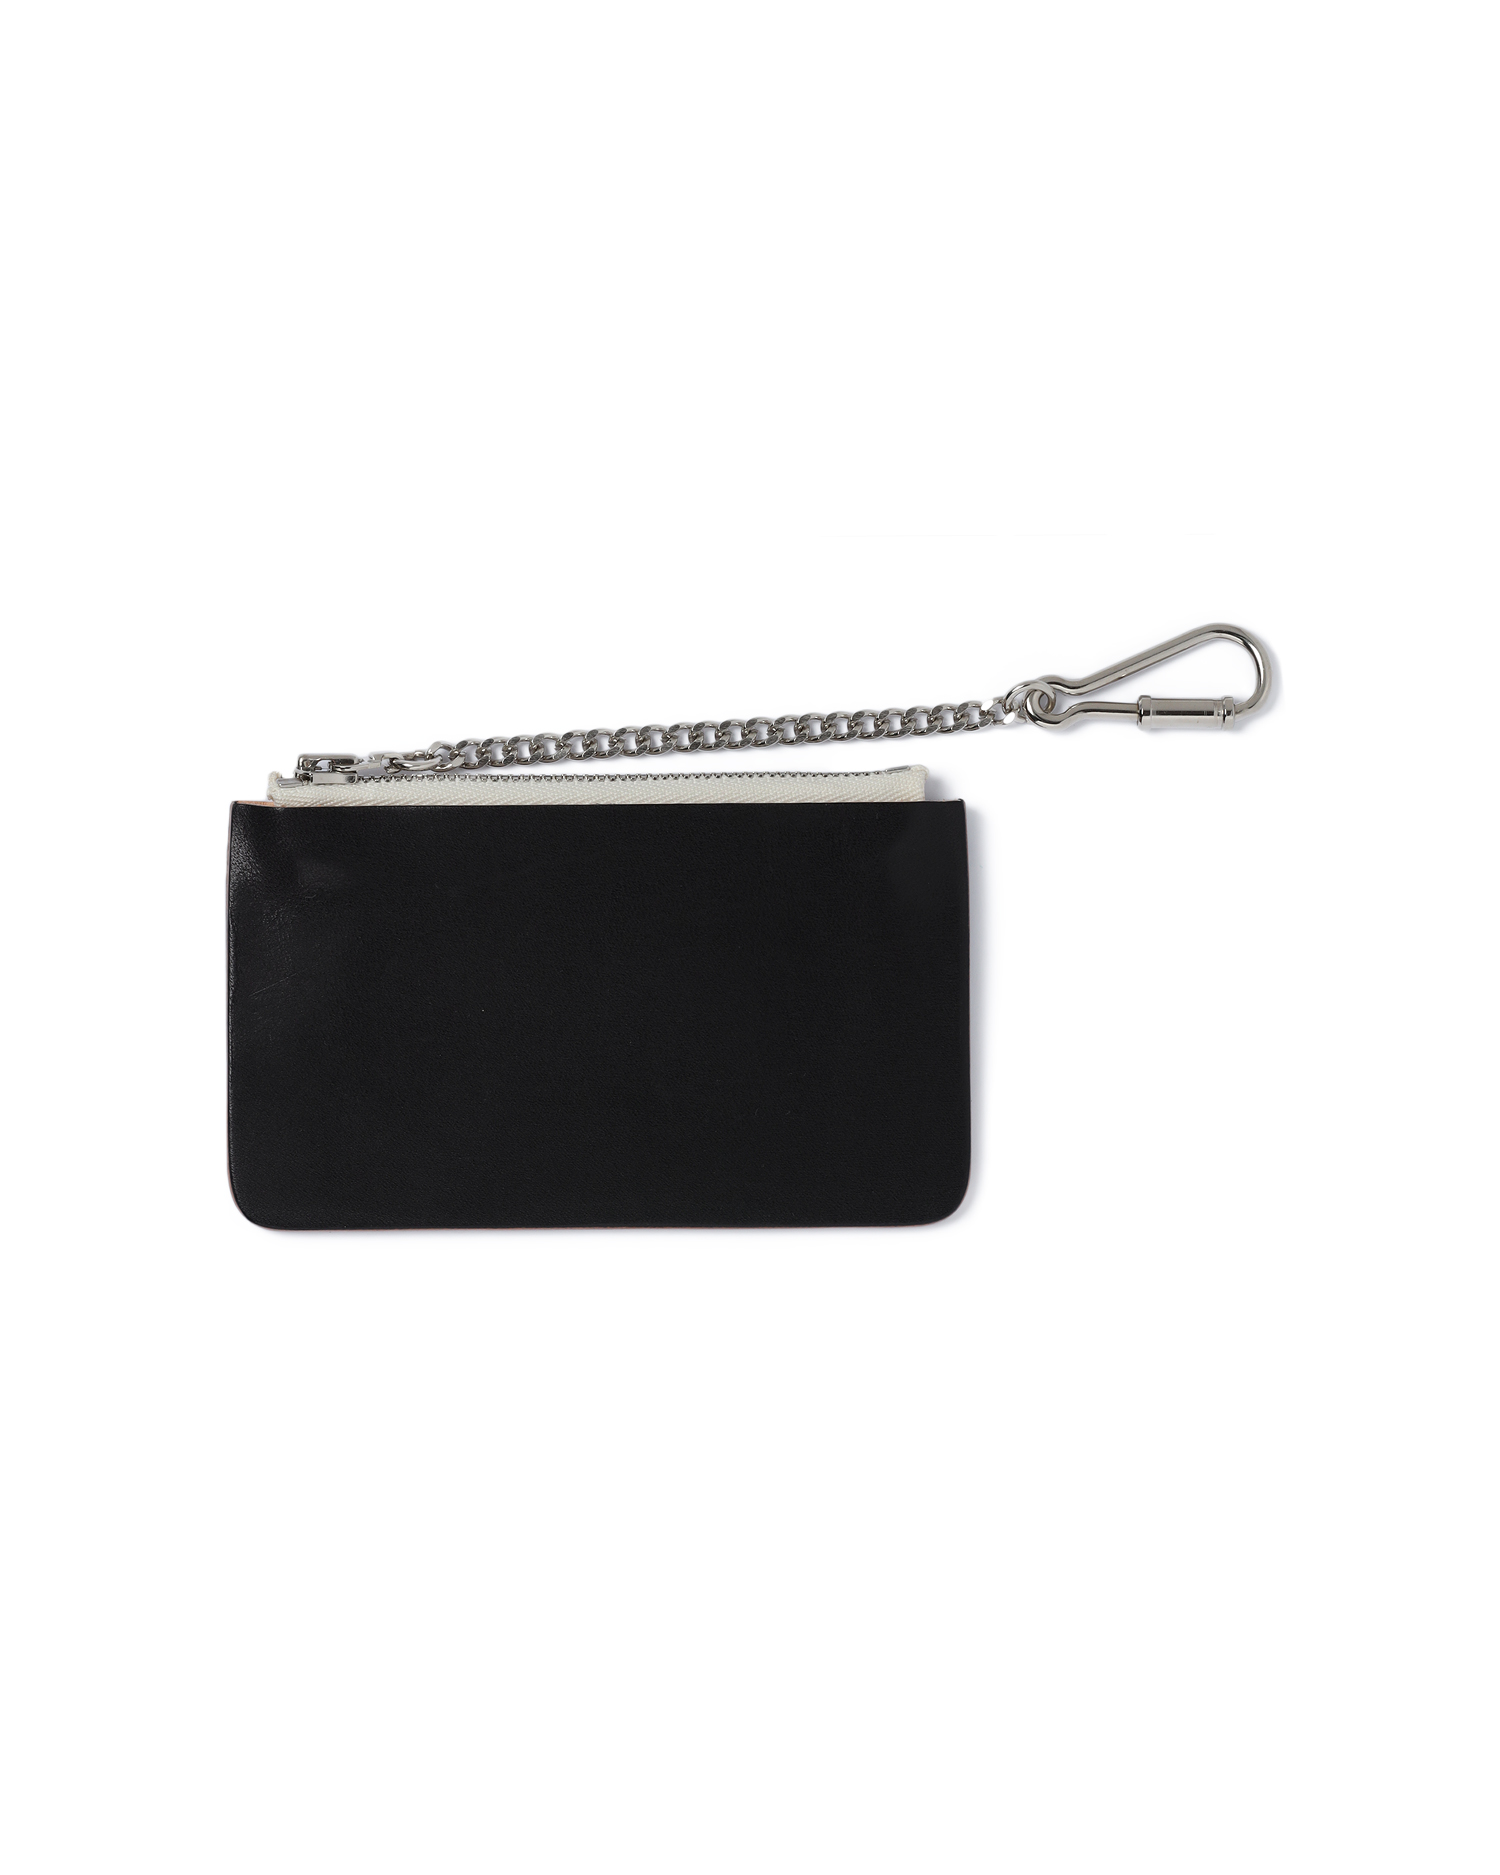 HENDER SCHEME Seamless chain purse | ITeSHOP